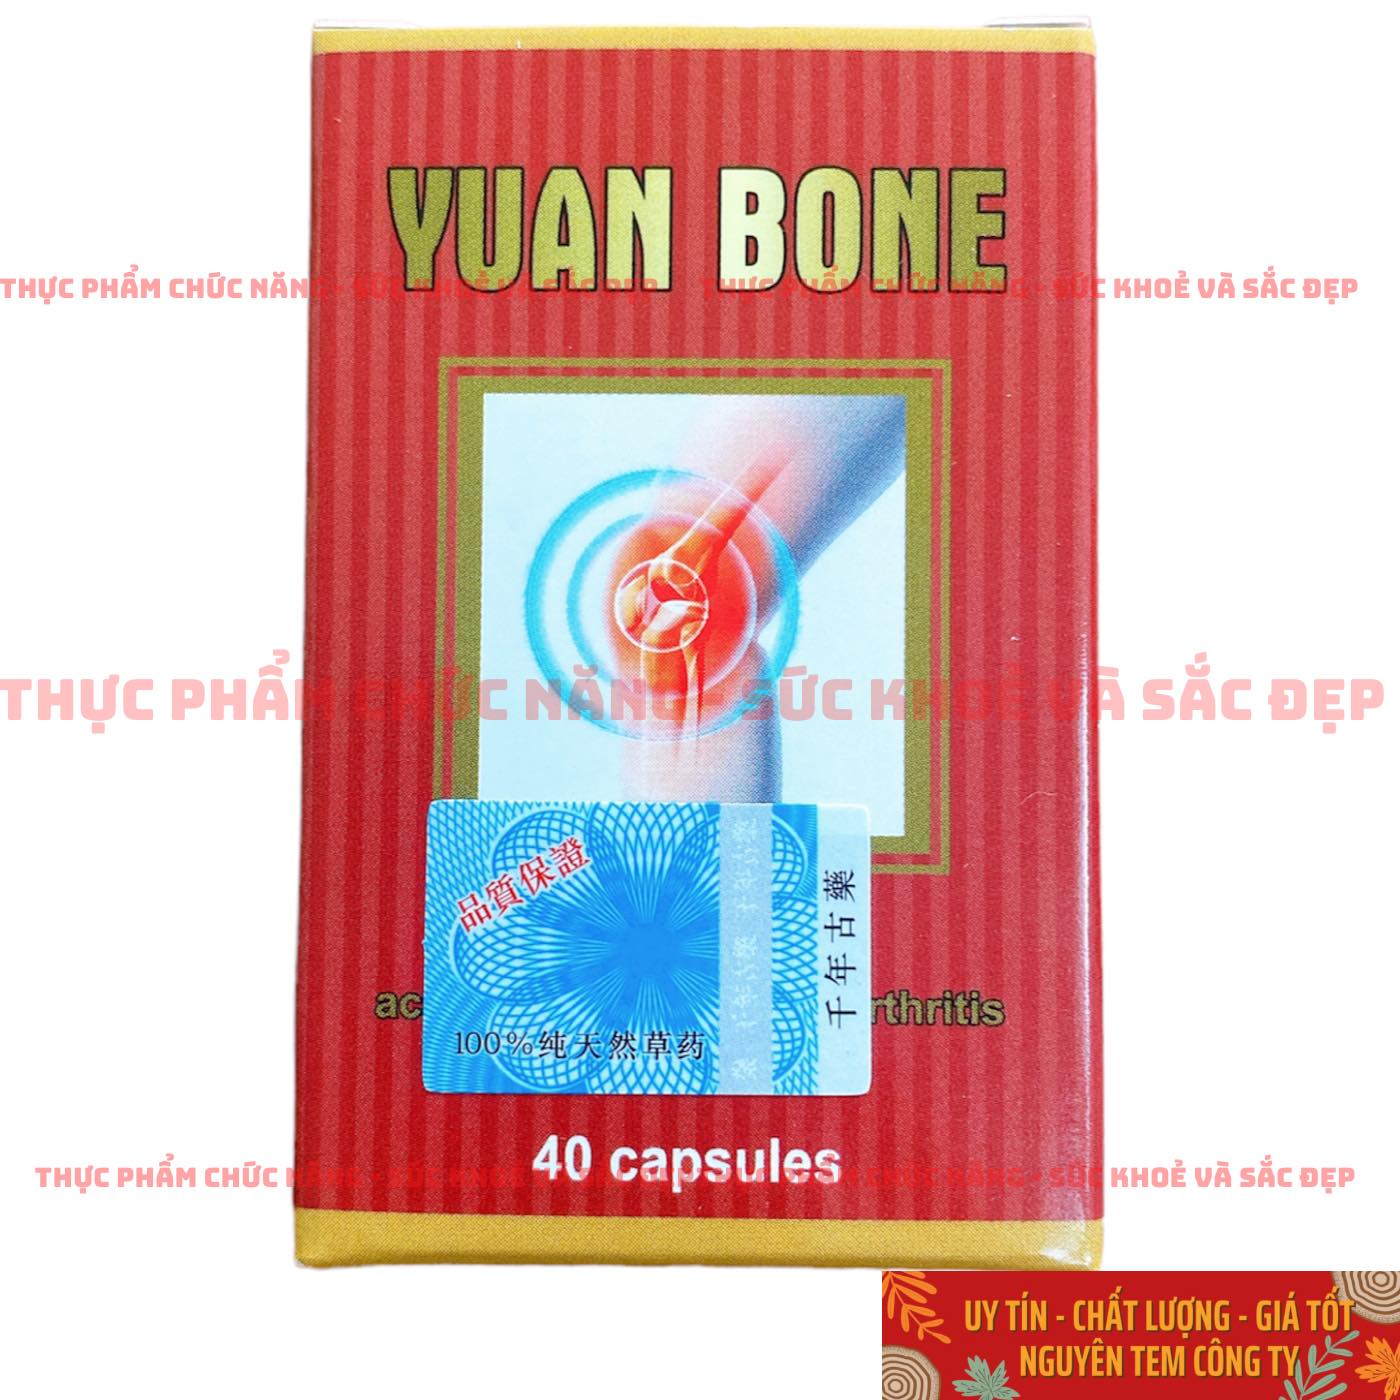 Yuan Bone Chính Hãng Malaysia - hộp 40 Viên Hỗ Trợ Đau Nhức, Thoát Vị Đĩa Đệm